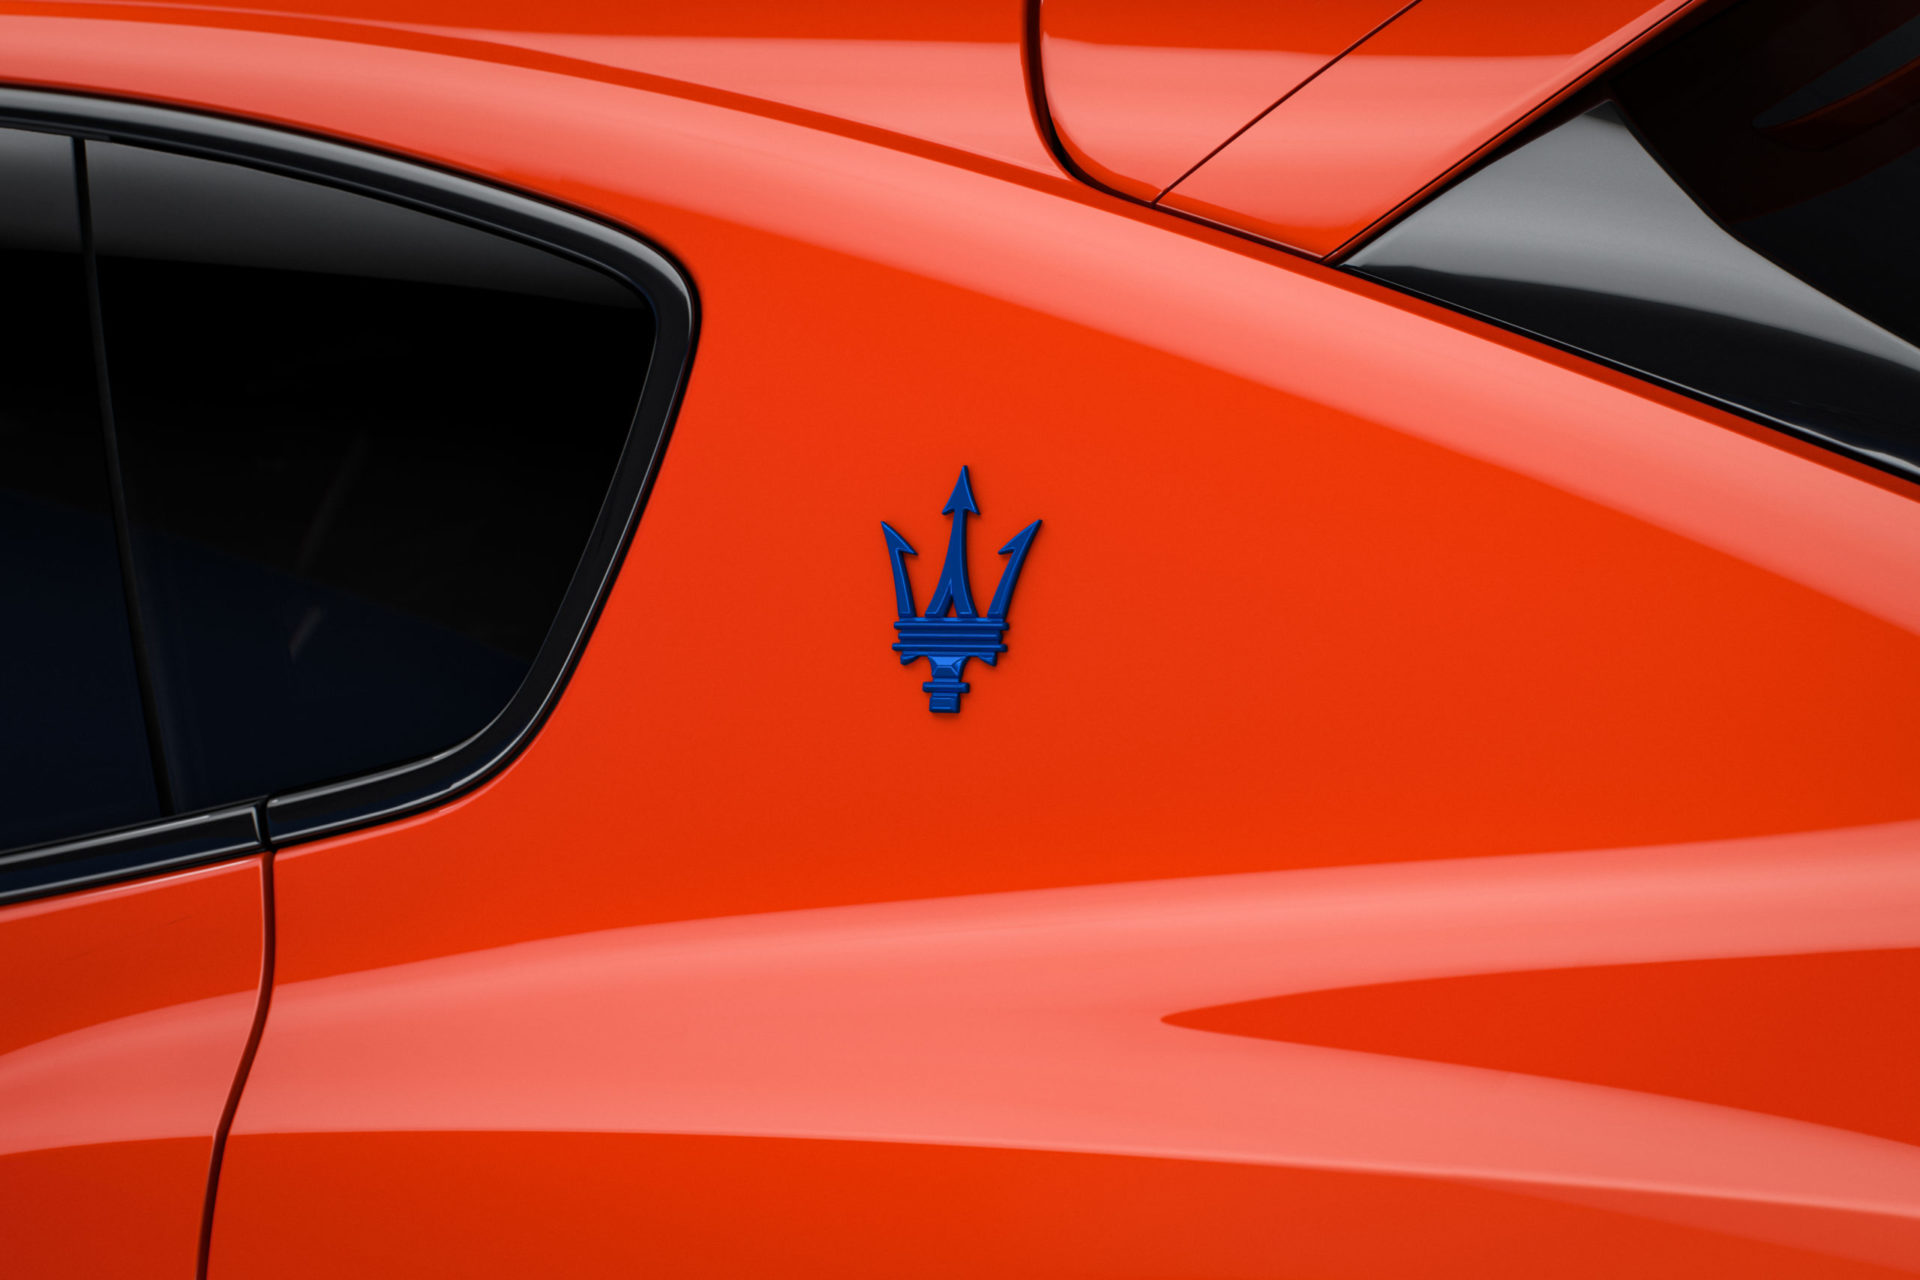 2022 Maserati Ghibli / Levante FTributo | Fanaticar